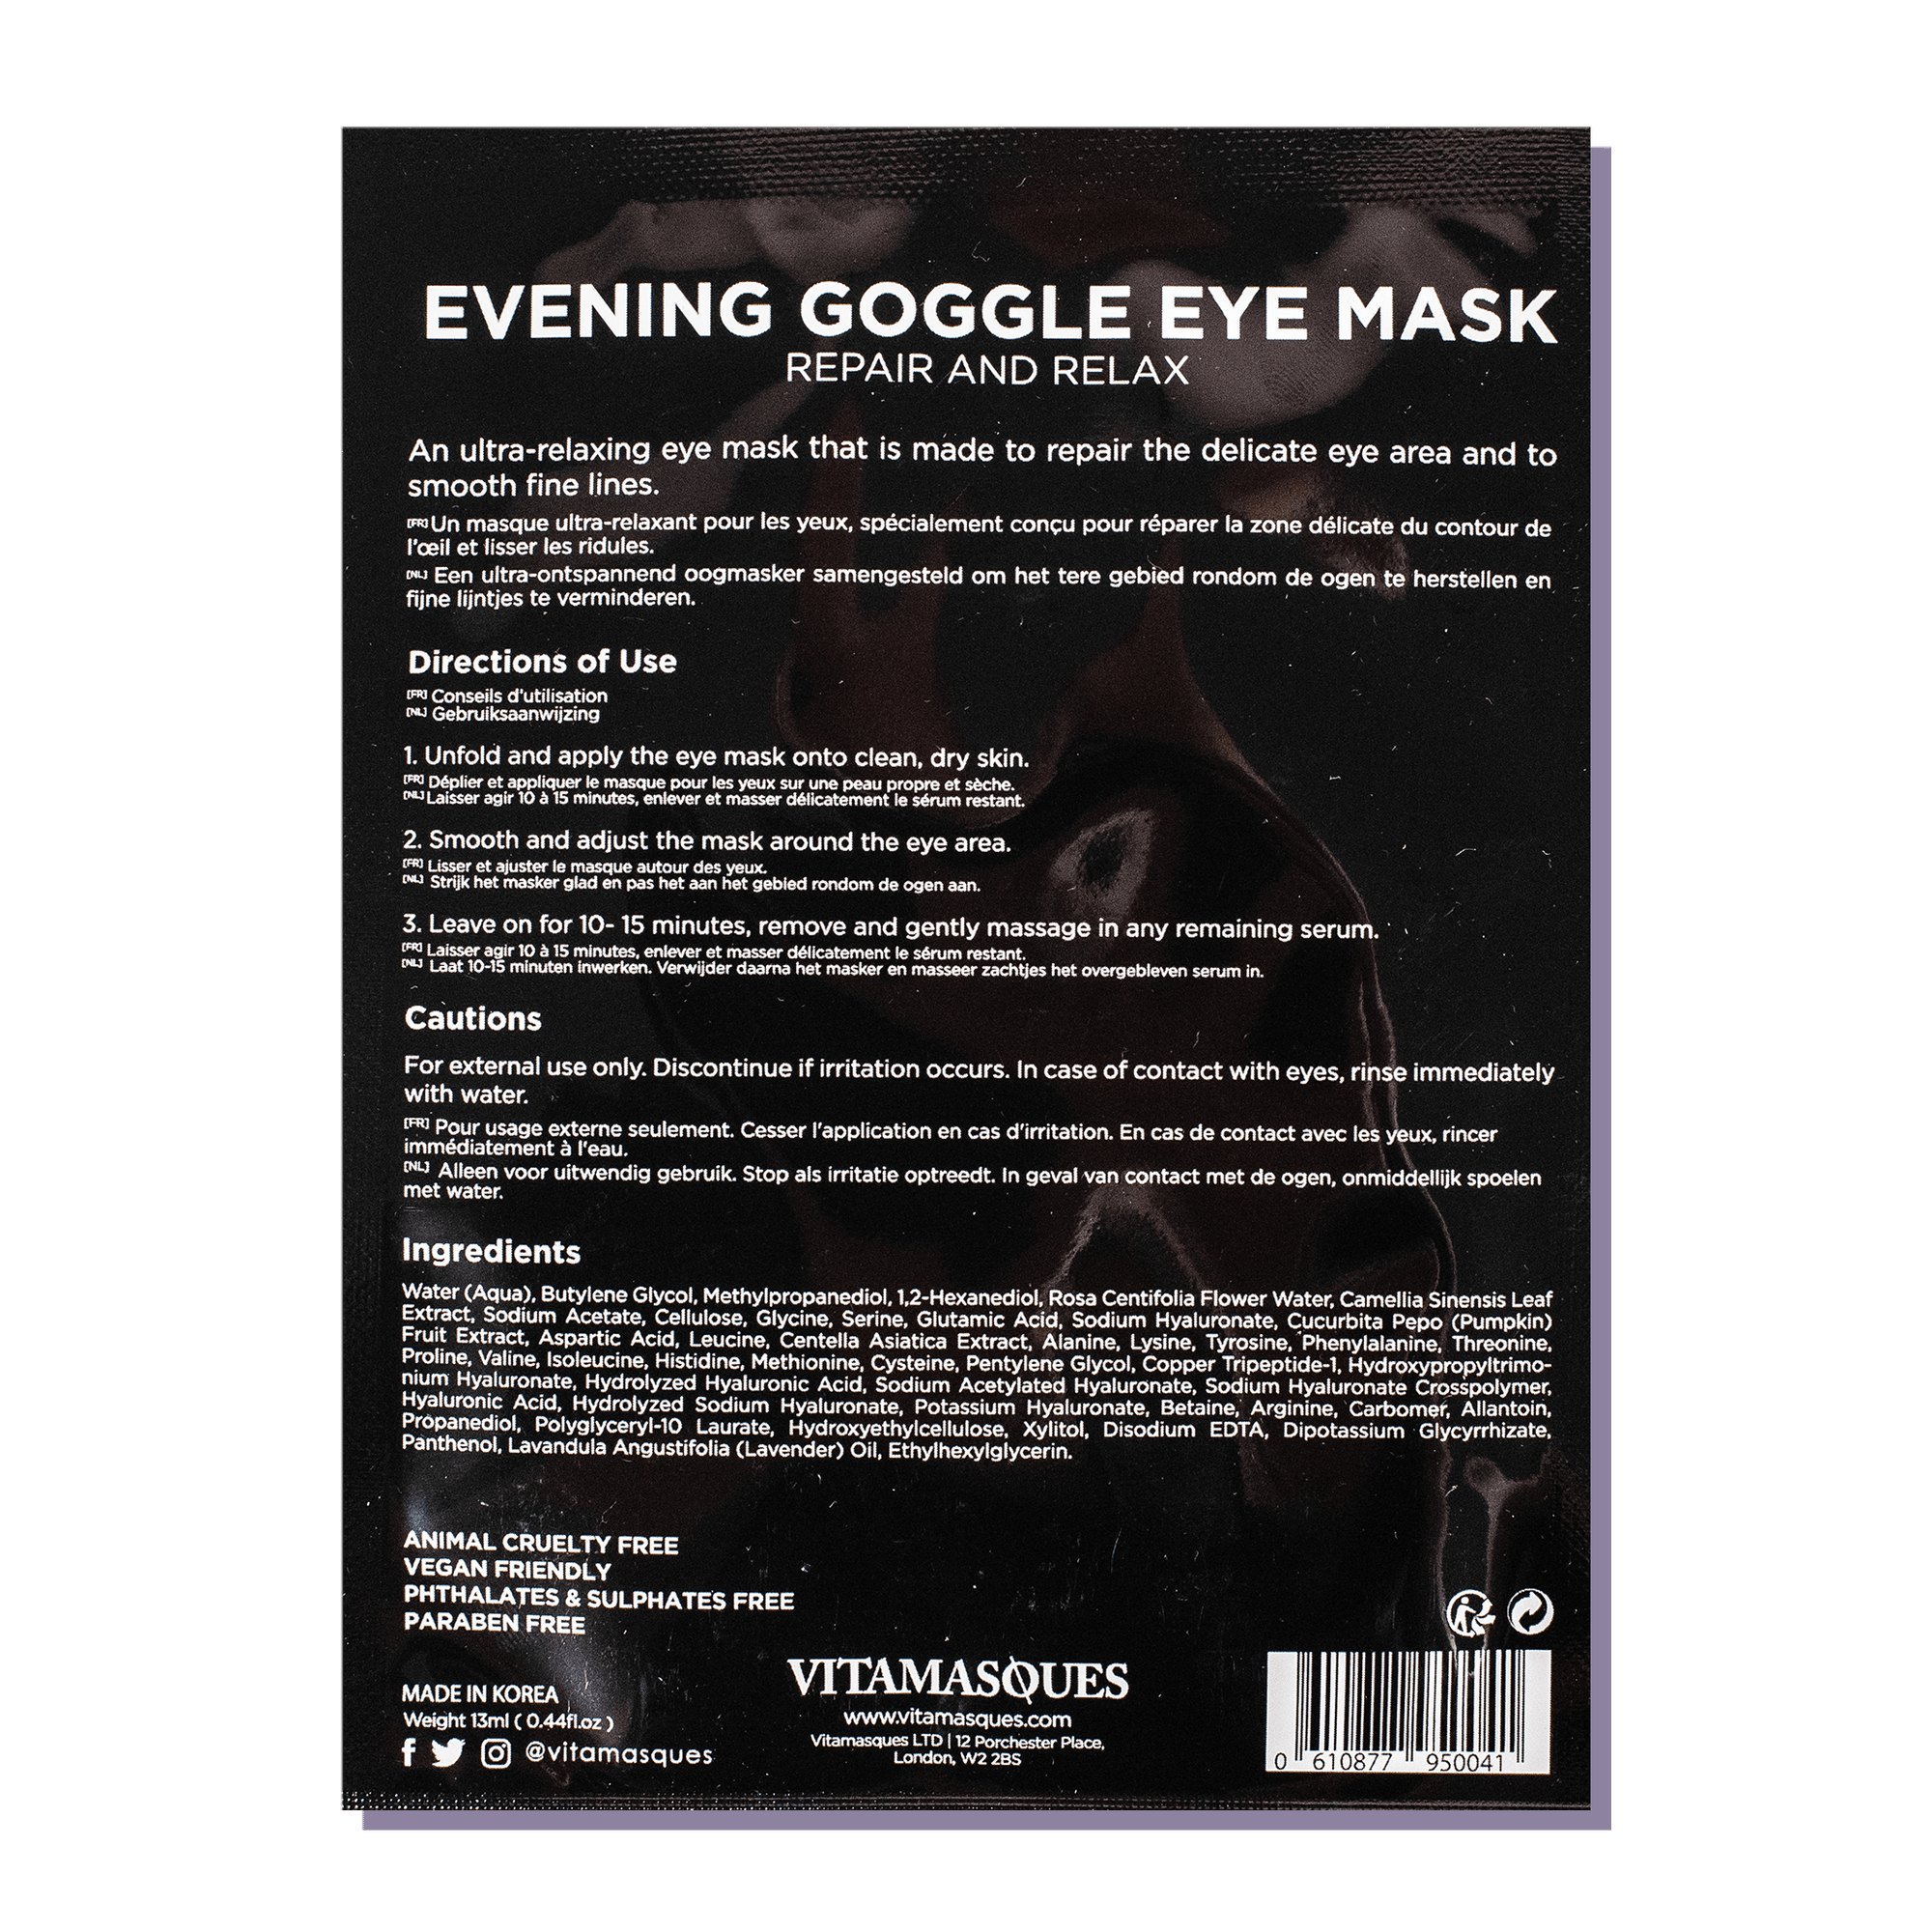 Evening Goggle Eye Mask - Vitamasques